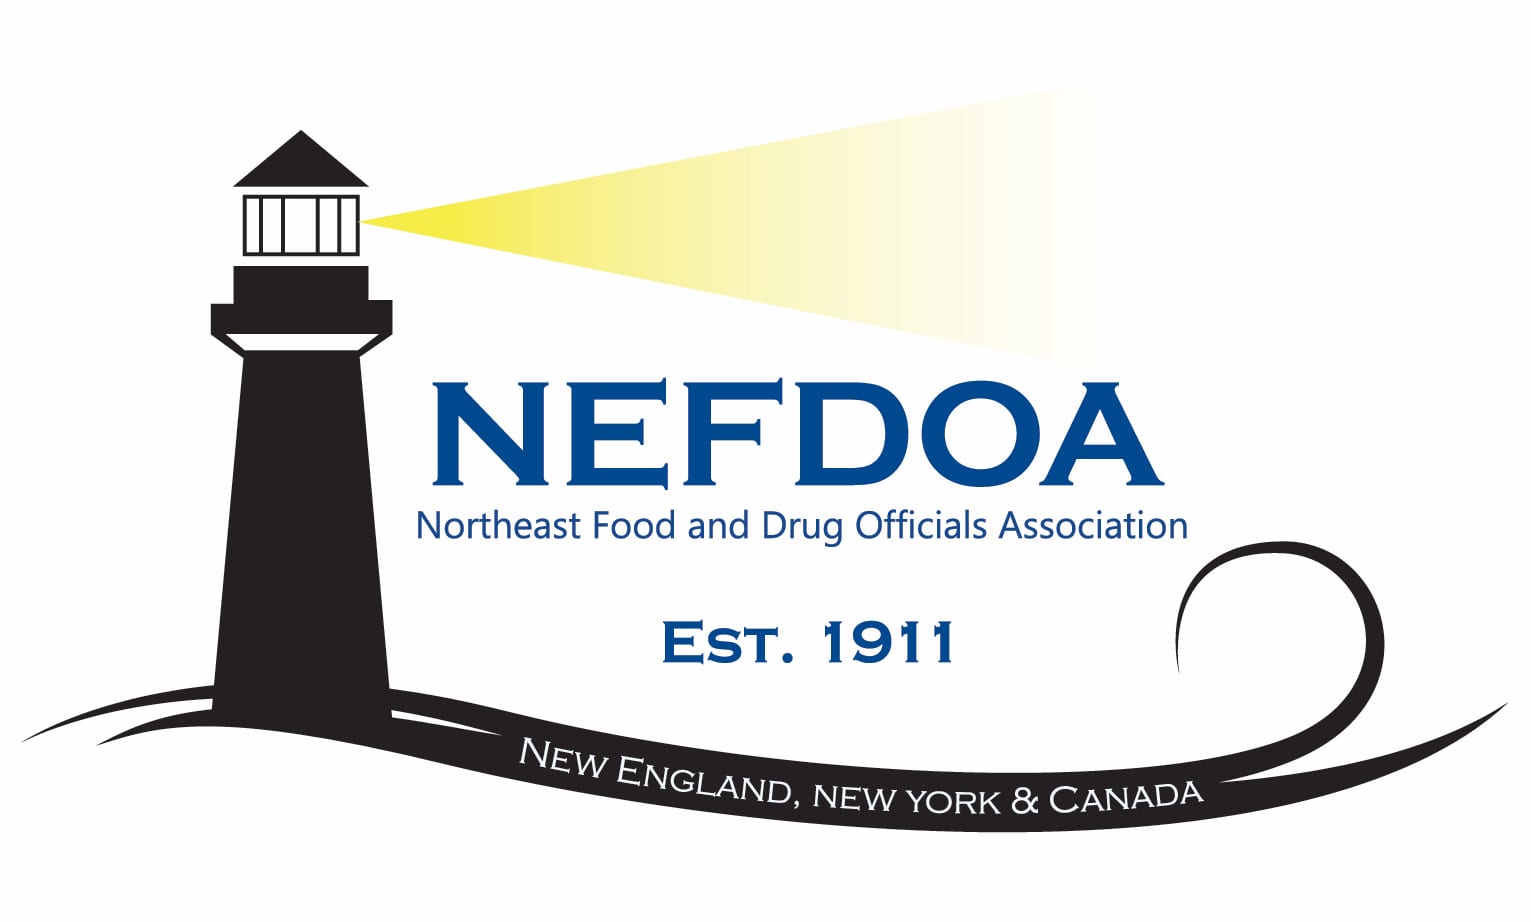 Northeast food and drug officials association logo